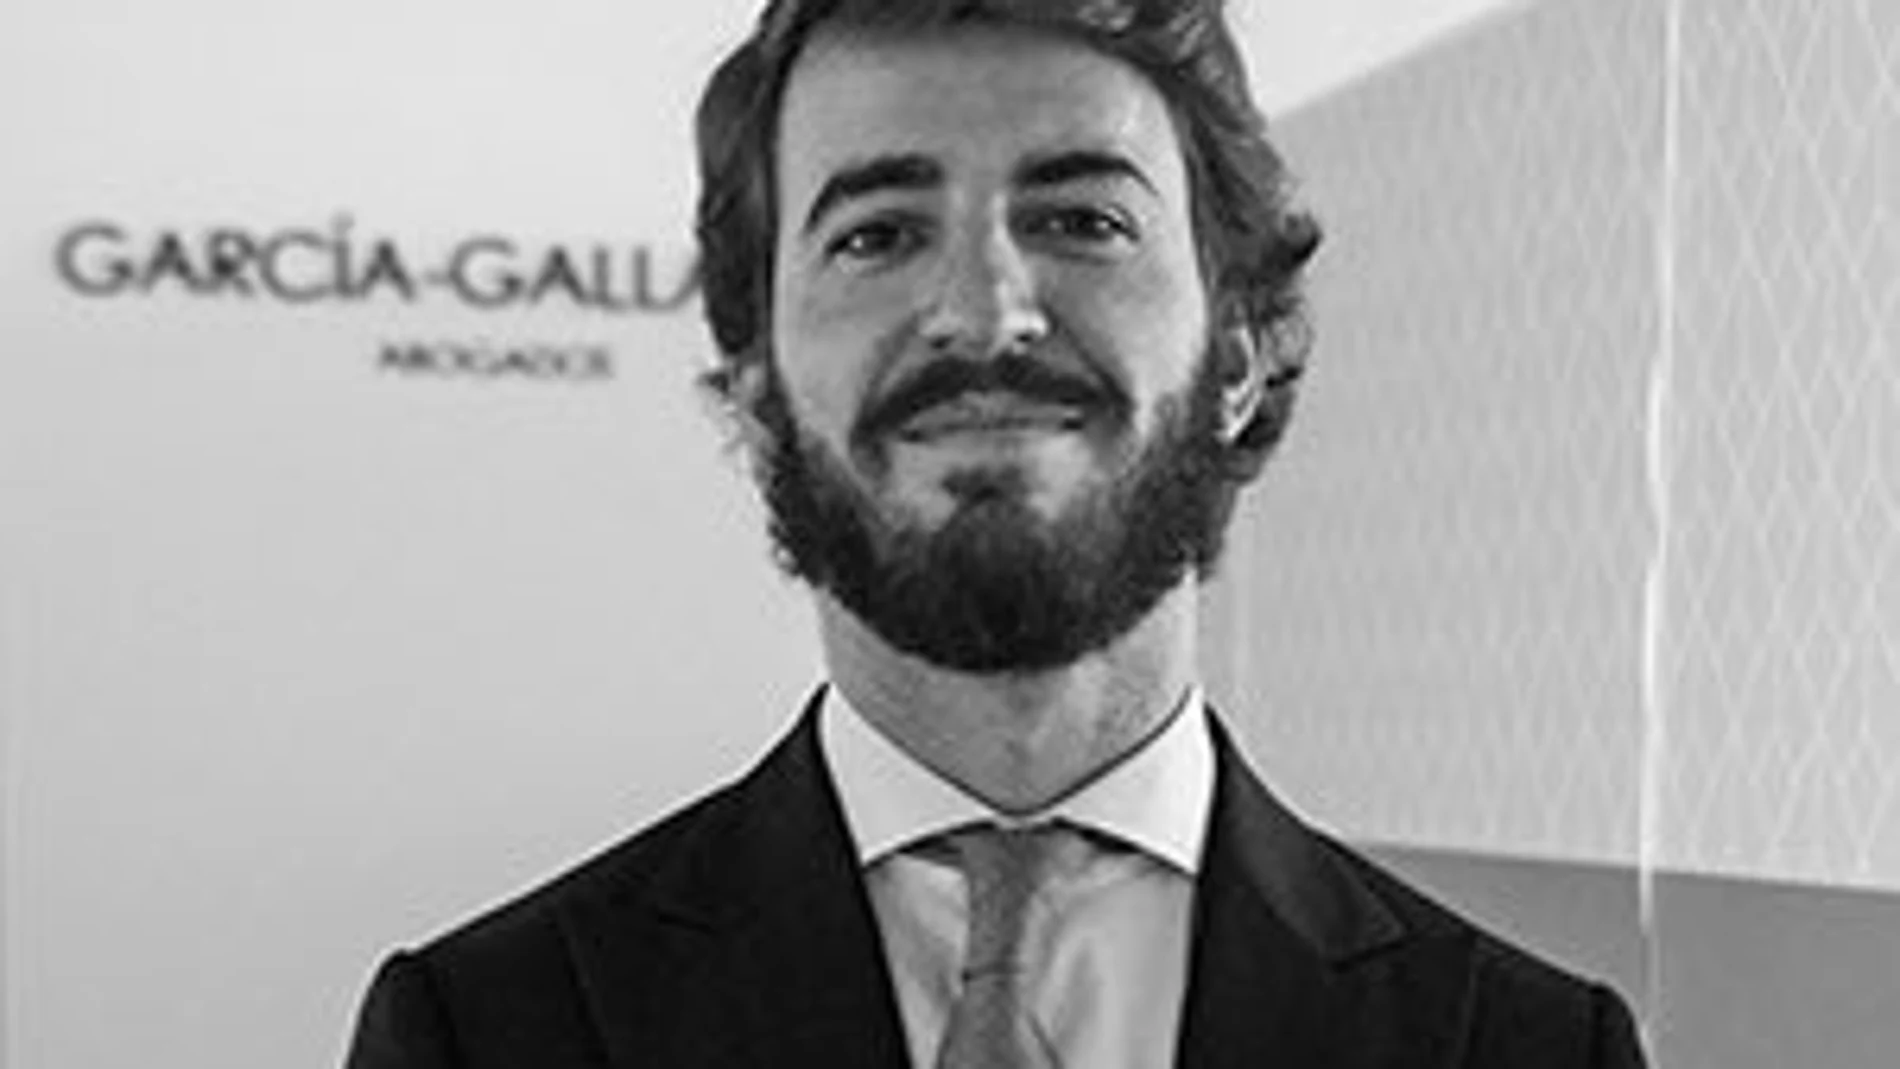 Juan García-Gallardo Frings